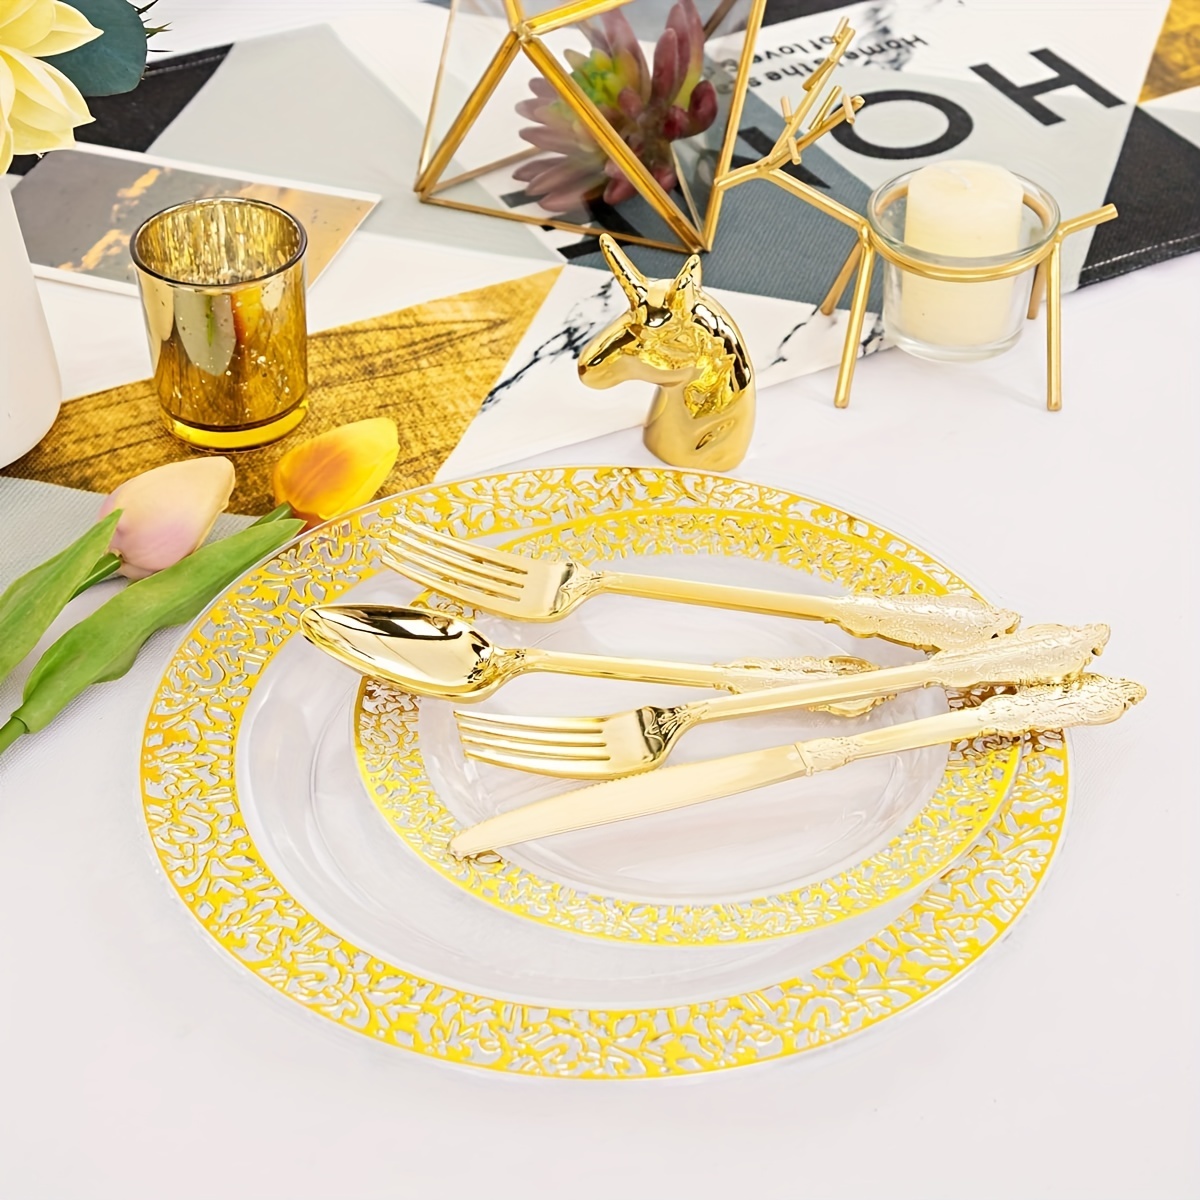 OliviasProject — Platos de papel mint con borde dorado